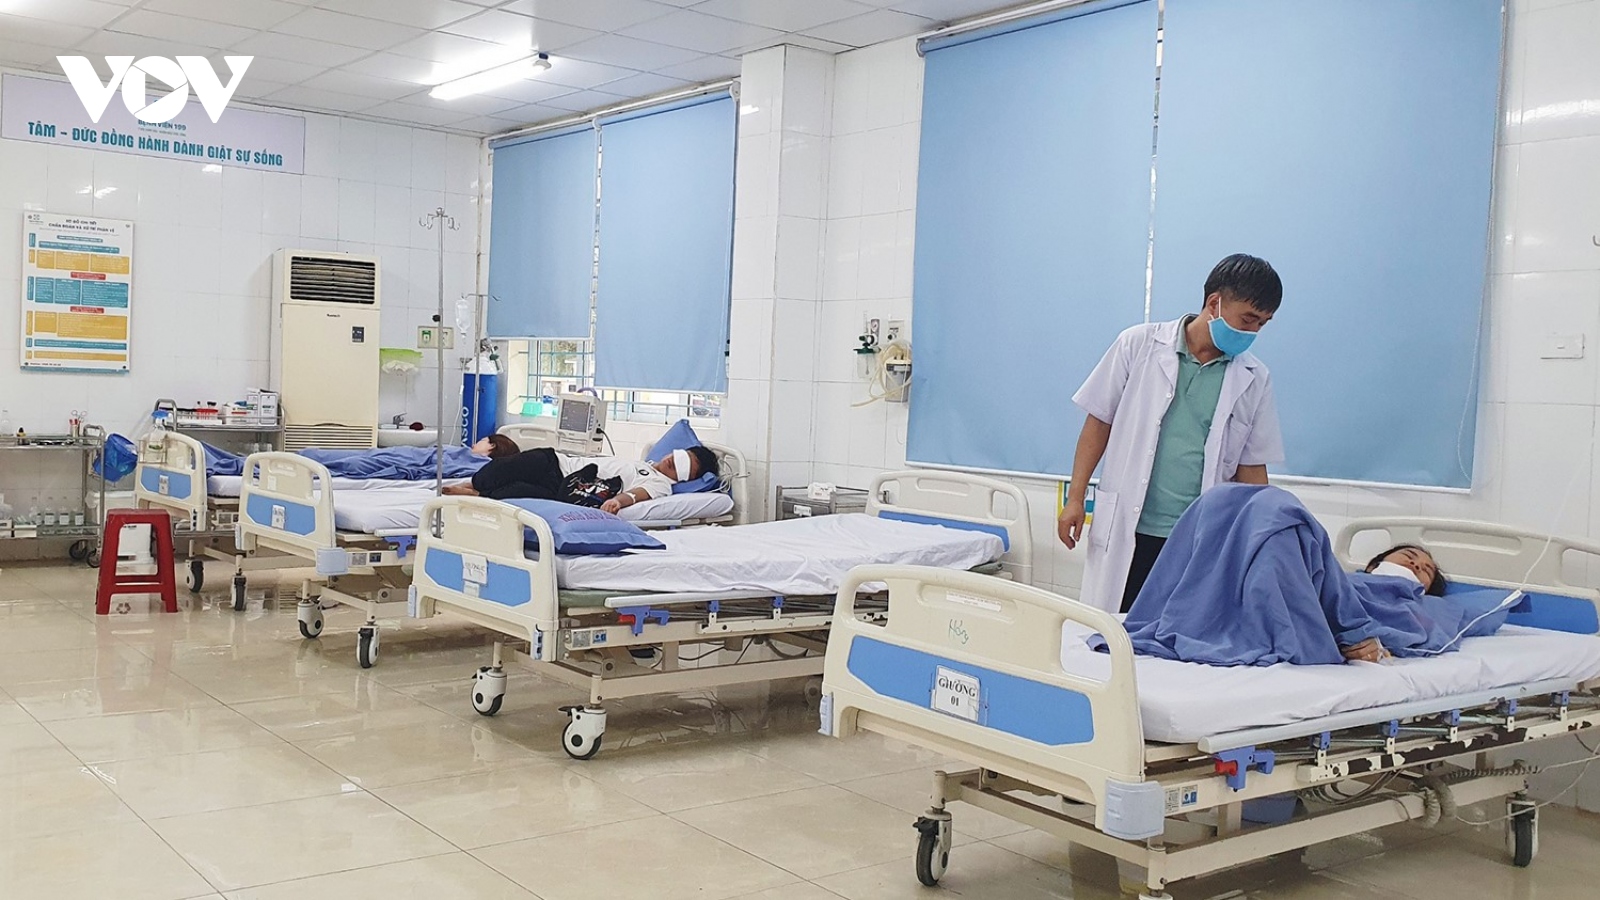 24 khách du lịch bị ngộ độc phải nhập viện cấp cứu ở Đà Nẵng